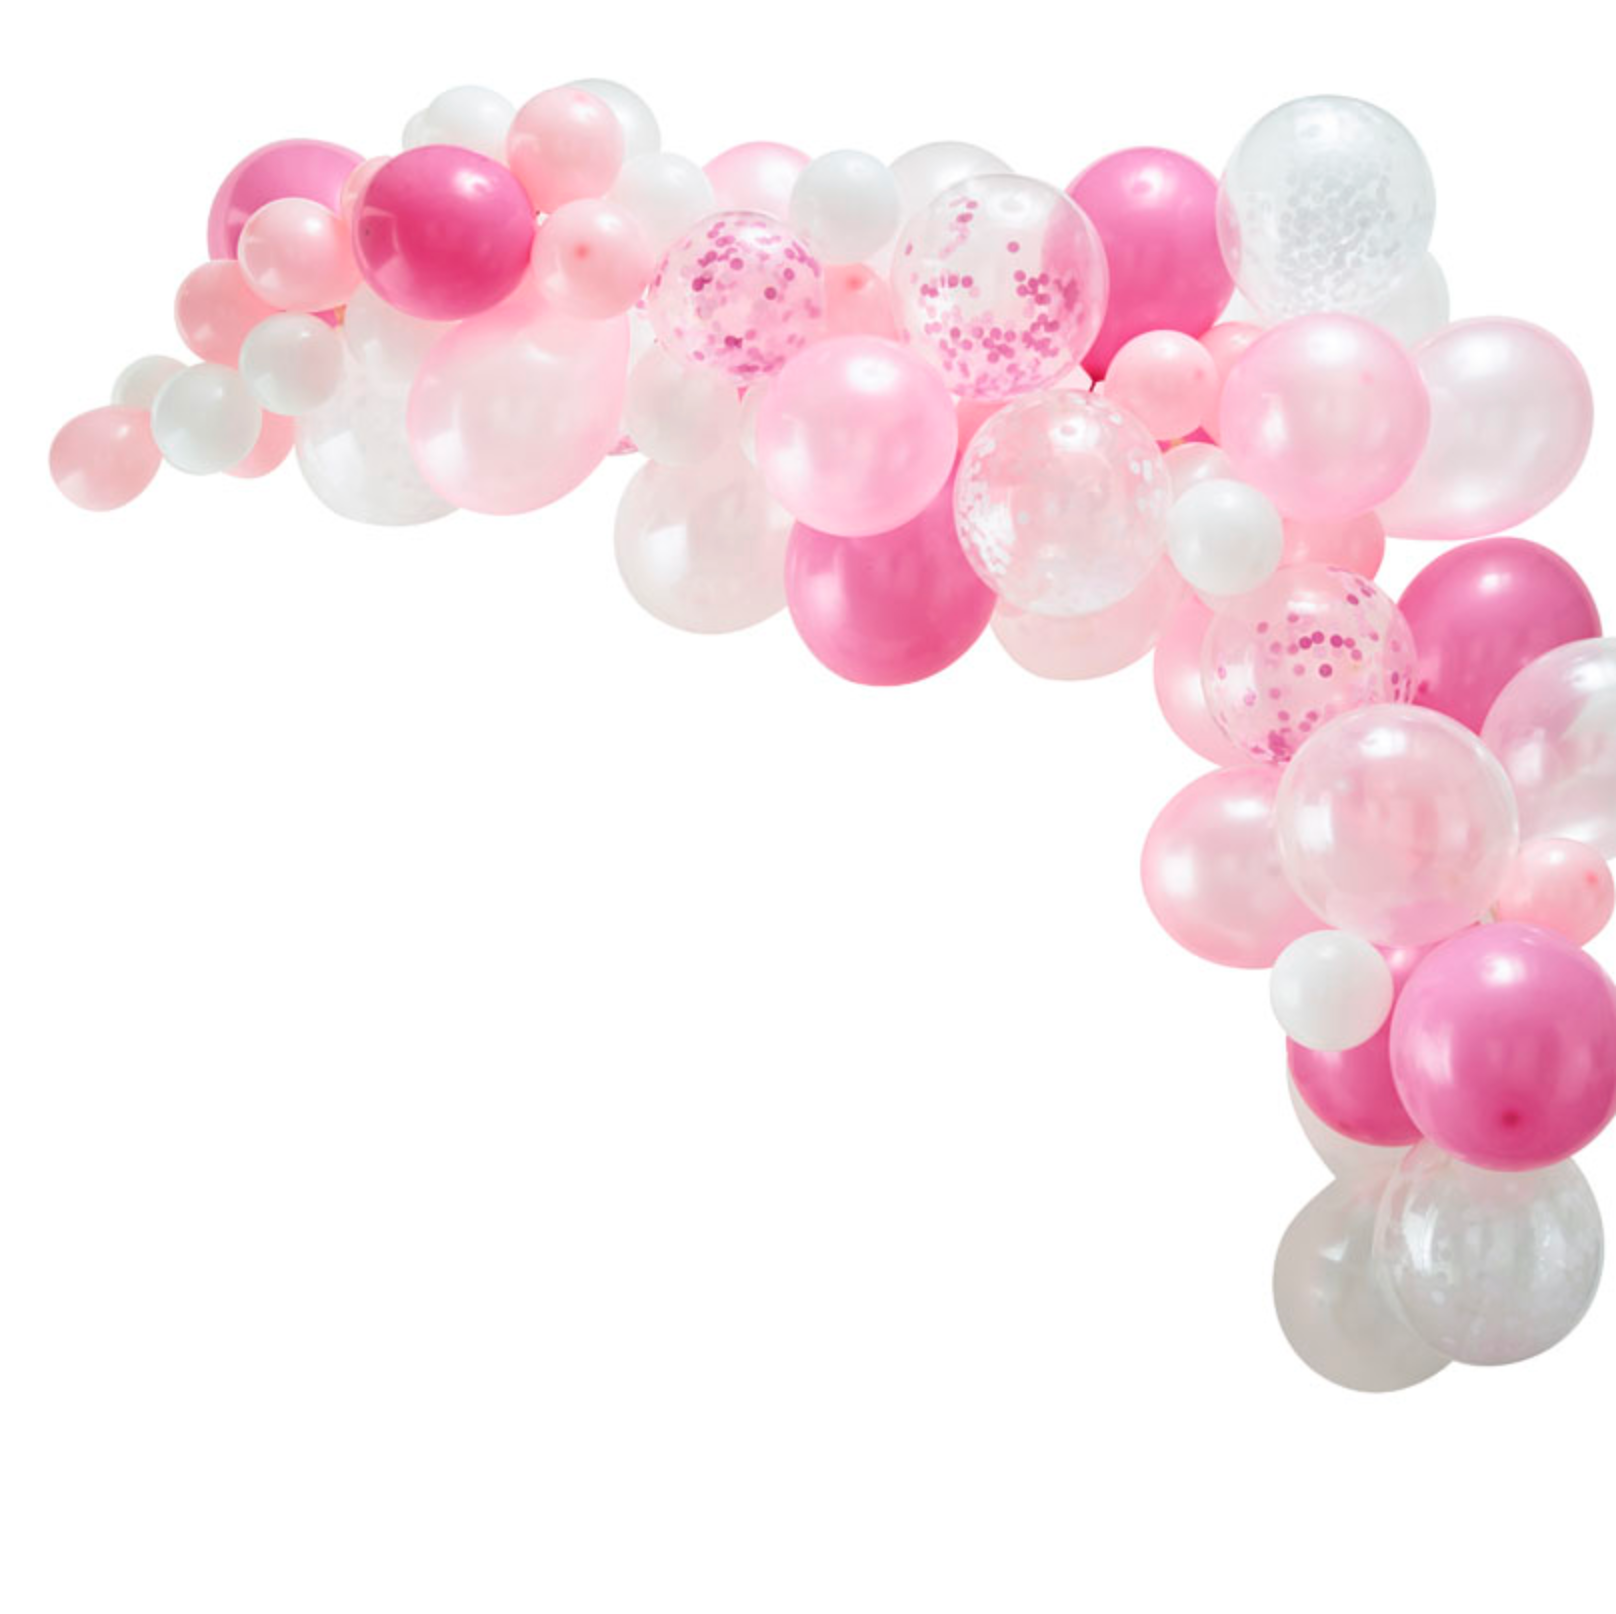 Balloon Arch Kit - Pink